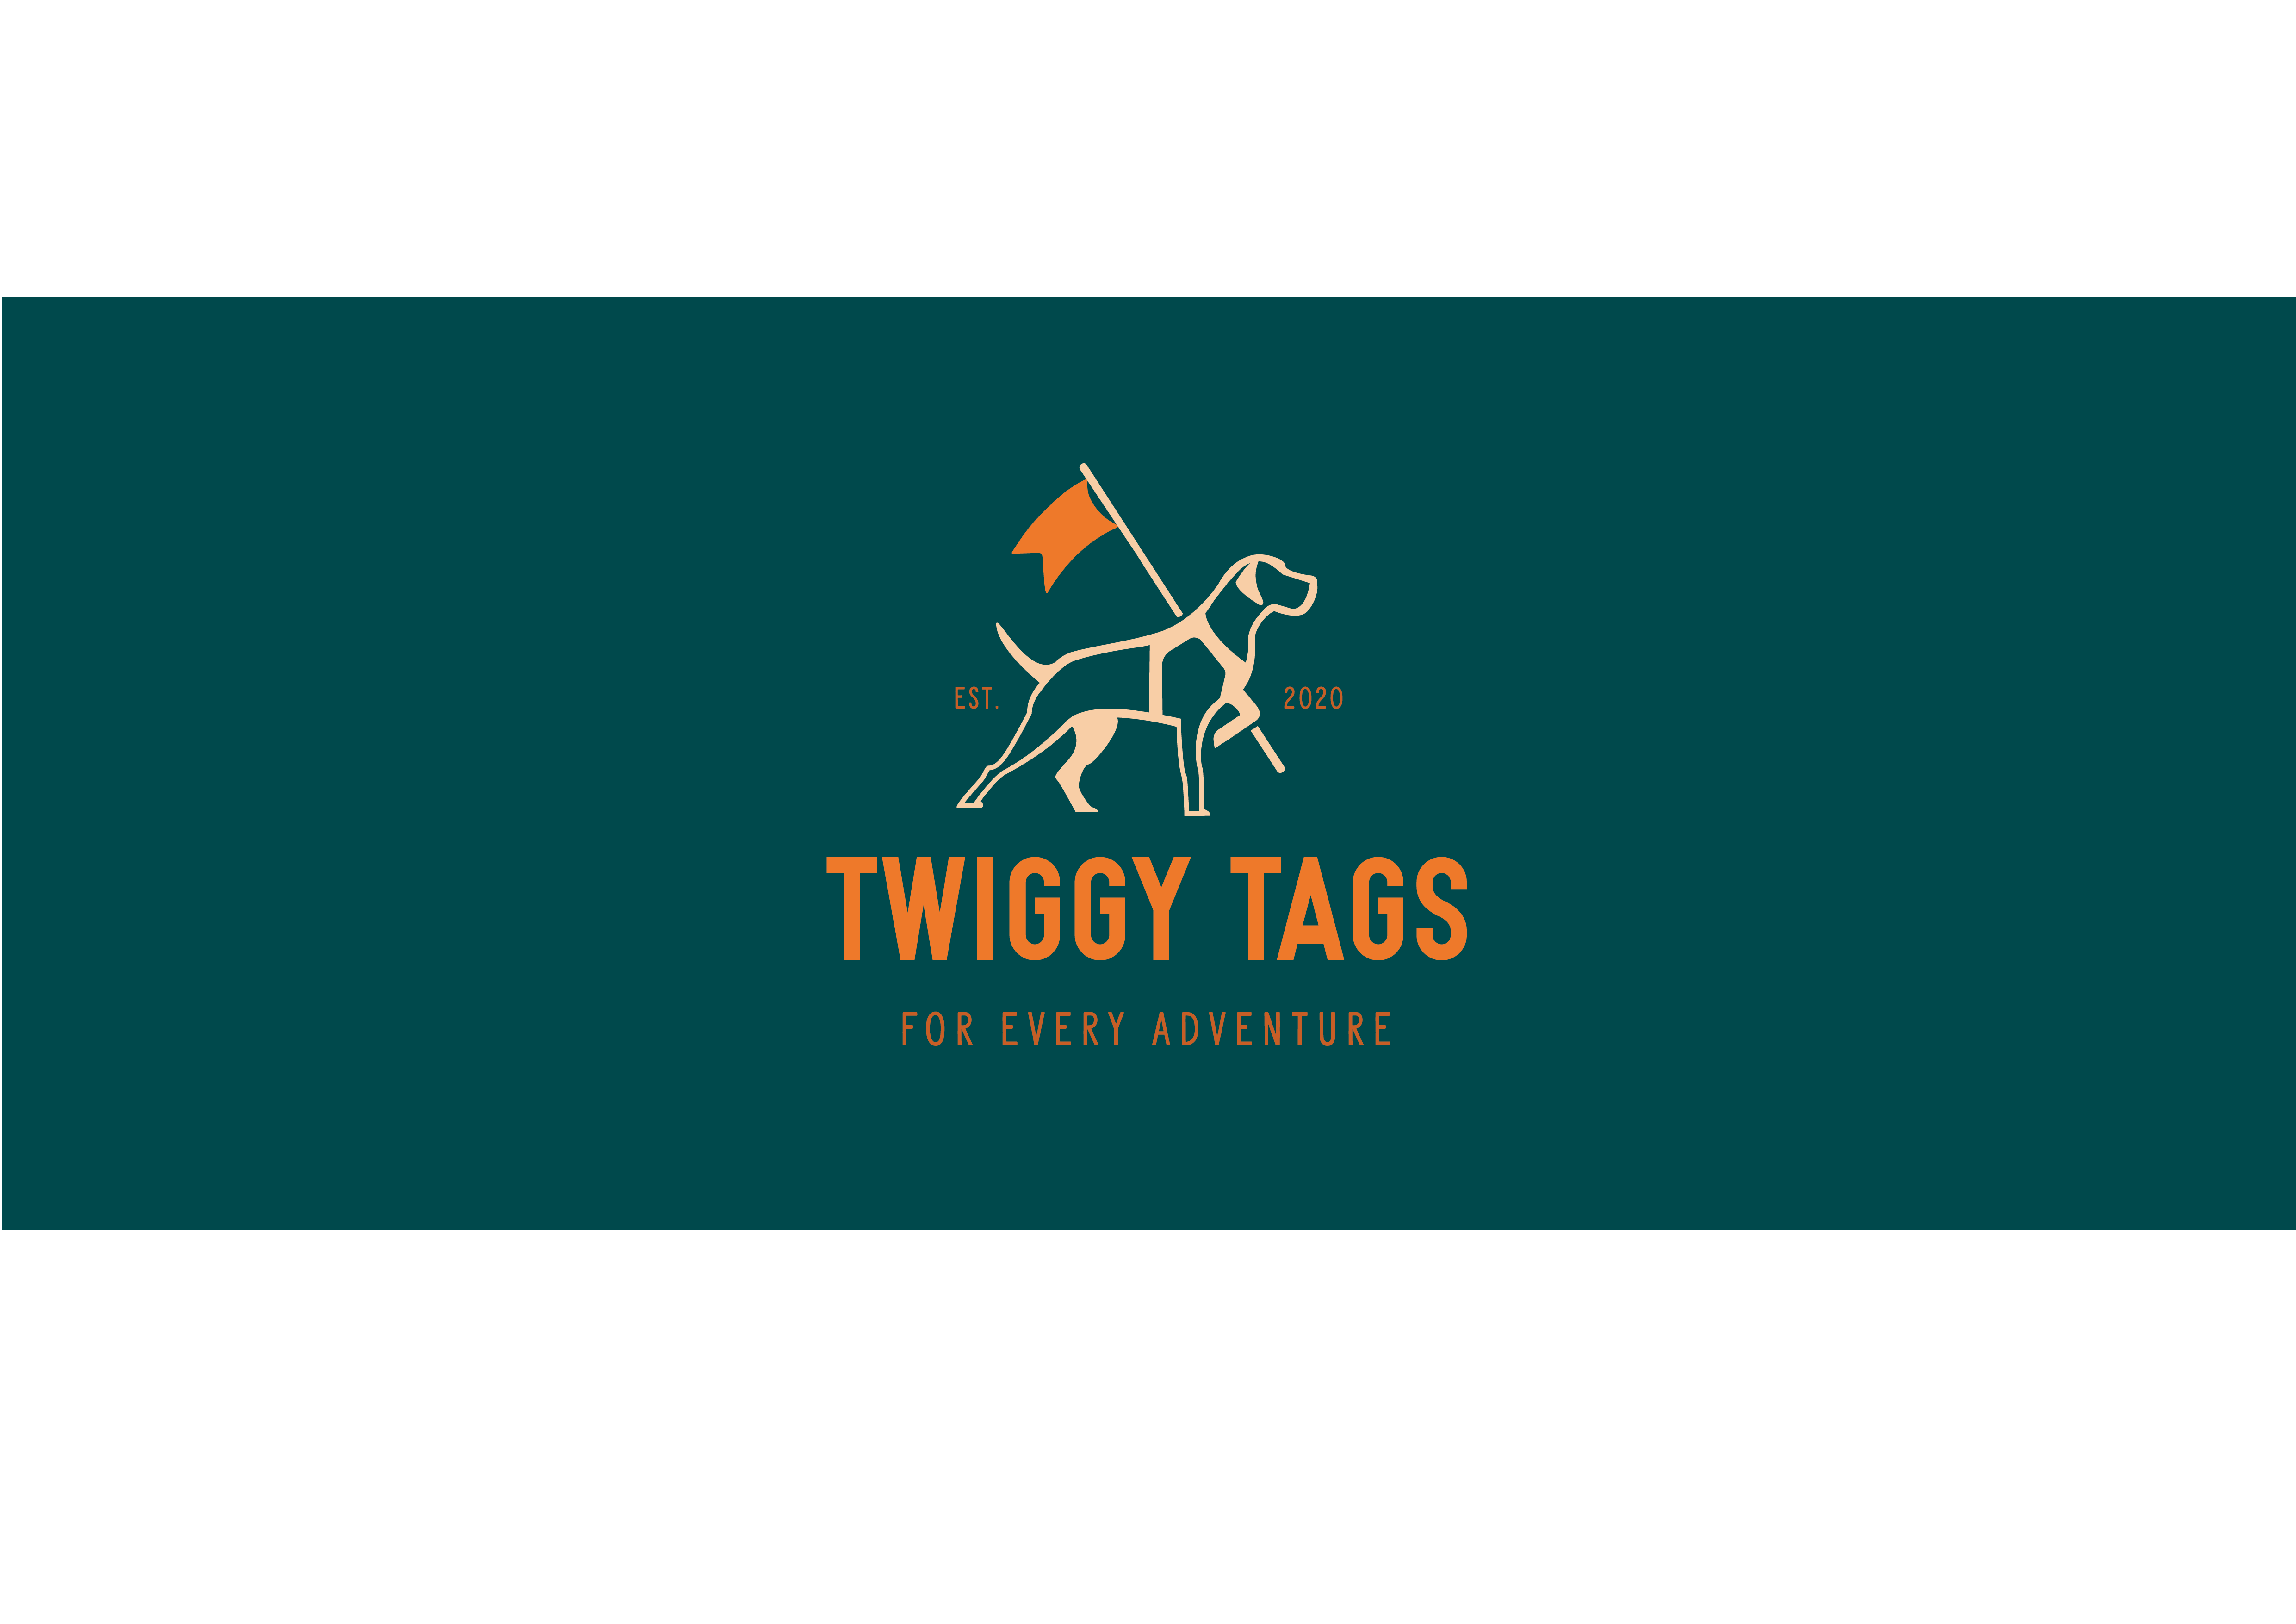 Twiggy Tags Ltd